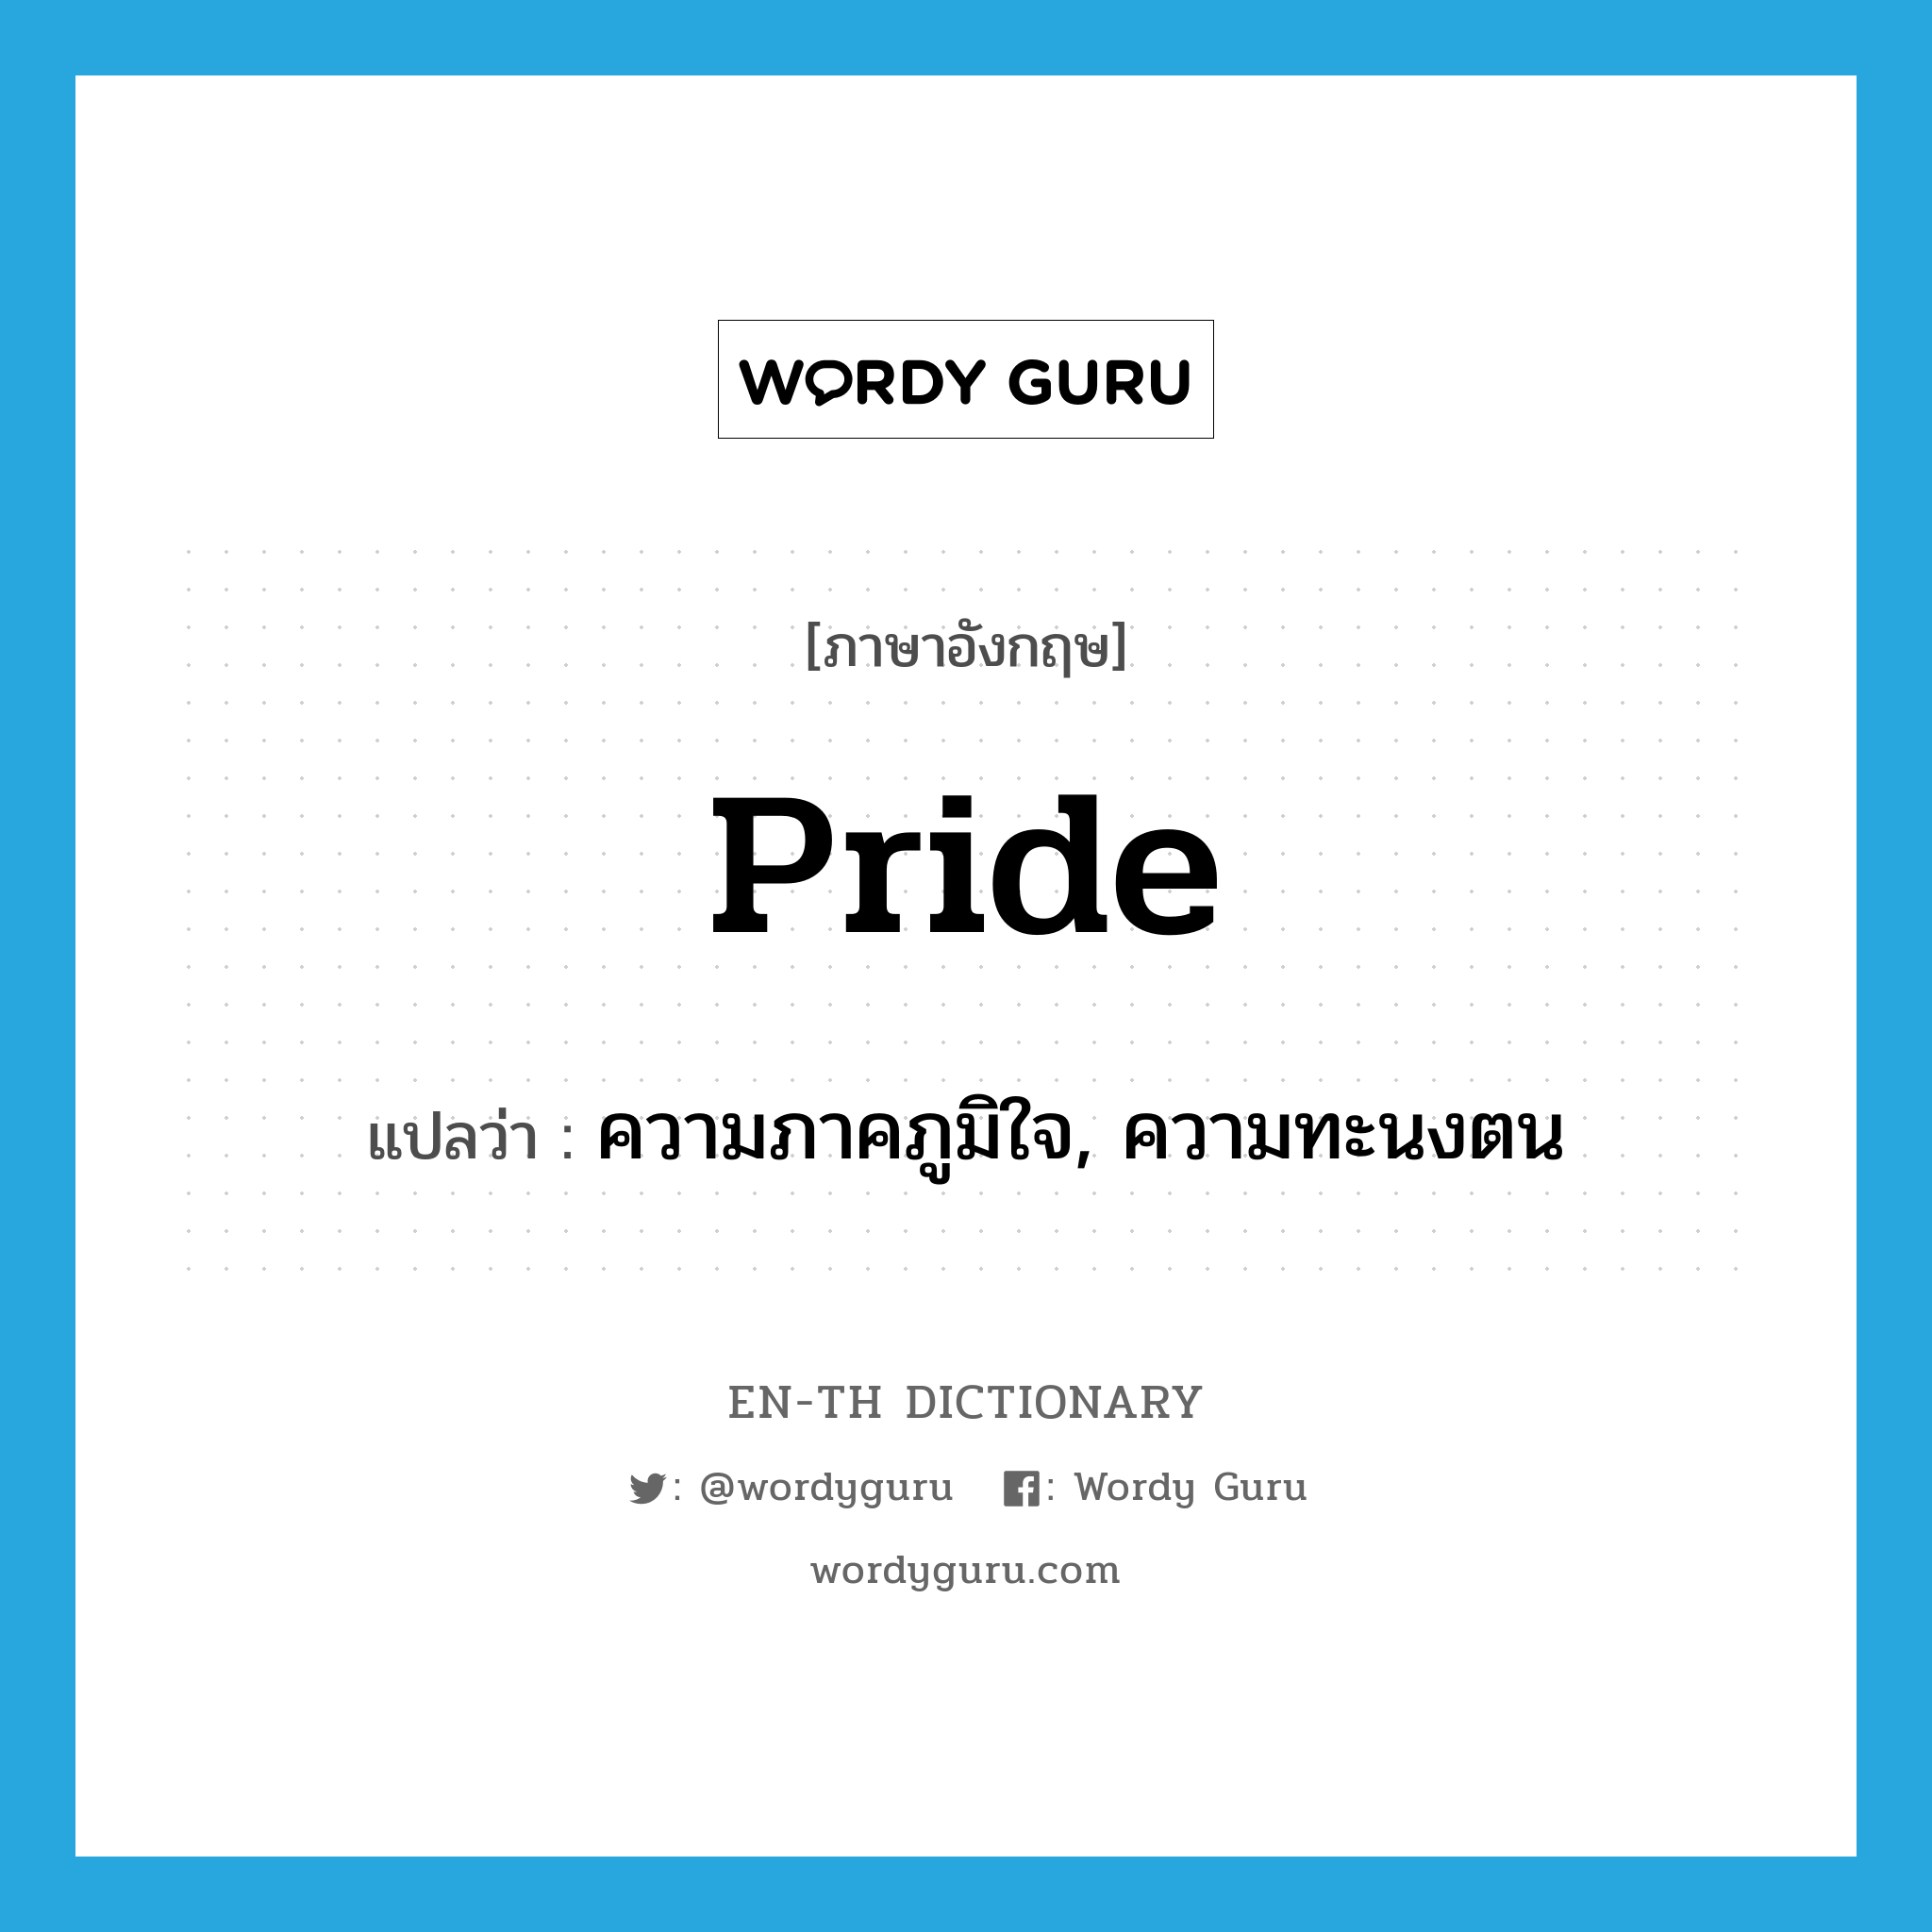 ความภาคภูมิใจ, ความทะนงตน ภาษาอังกฤษ?, คำศัพท์ภาษาอังกฤษ ความภาคภูมิใจ, ความทะนงตน แปลว่า pride ประเภท N หมวด N